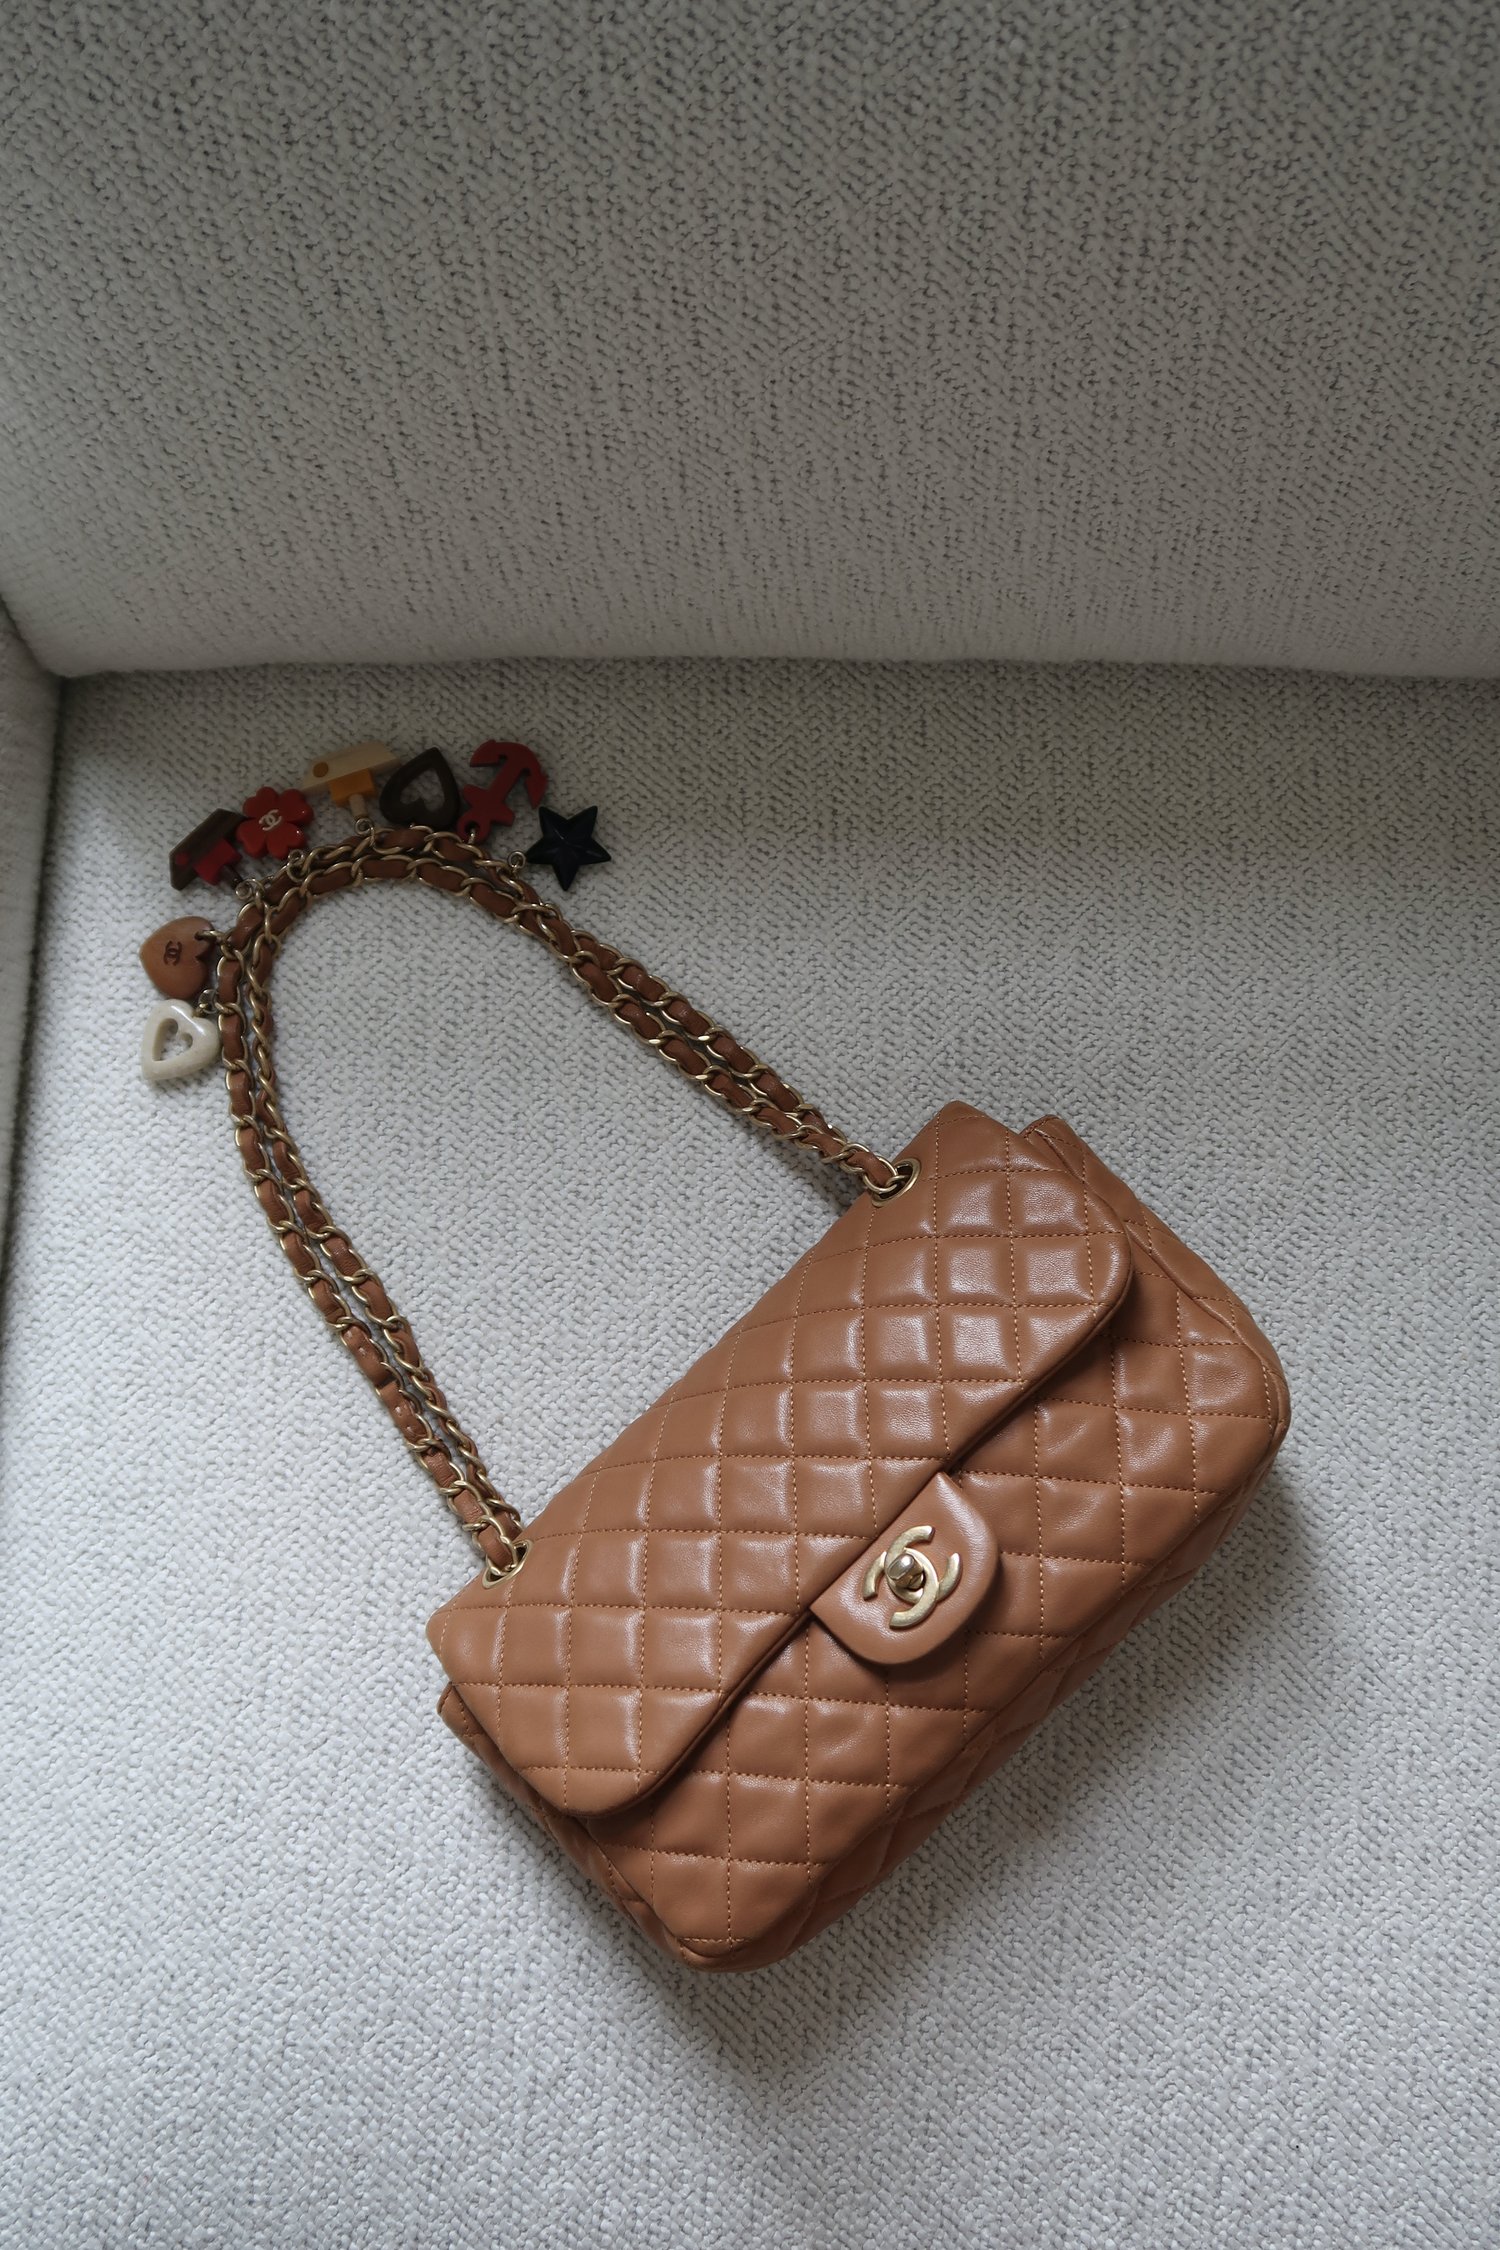 vintage pink chanel wallet